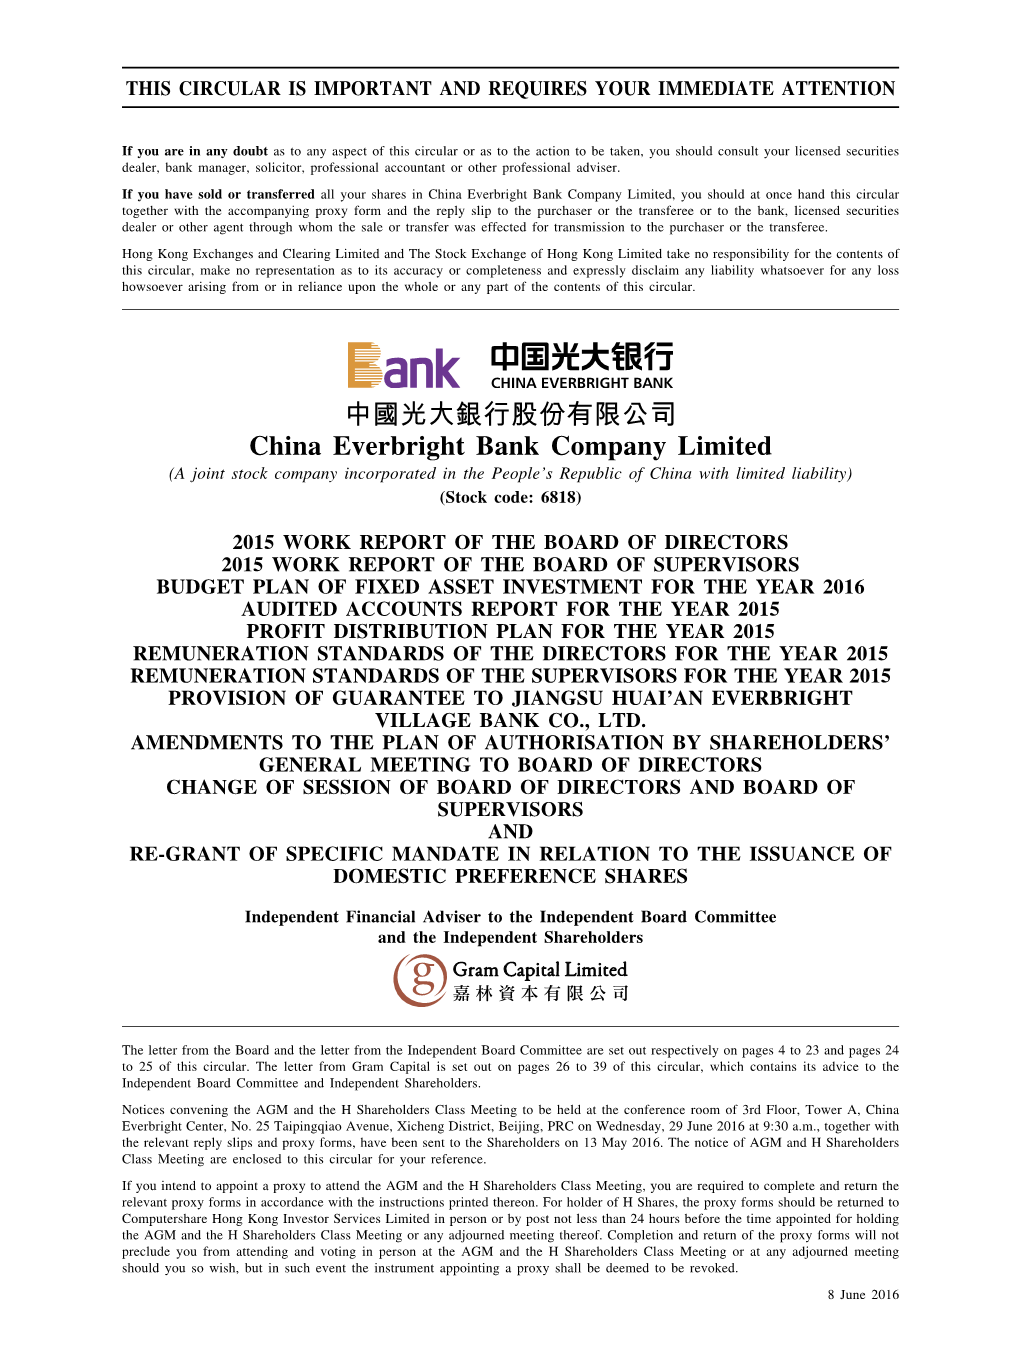 中國光大銀行股份有限公司 China Everbright Bank Company Limited (A Joint Stock Company Incorporated in the People’S Republic of China with Limited Liability) (Stock Code: 6818)